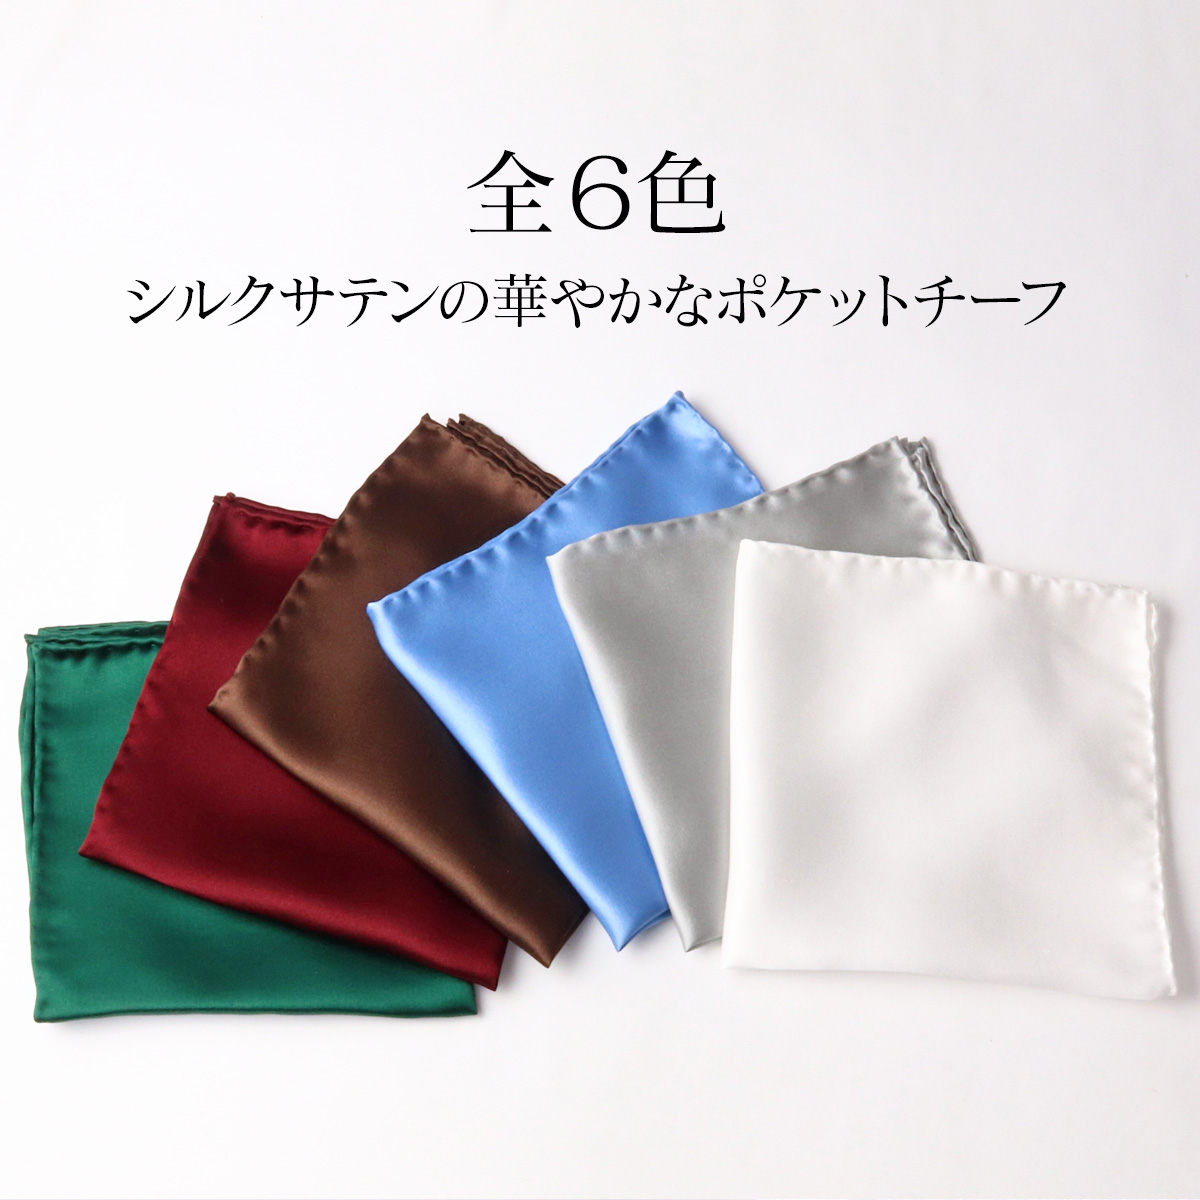 ポケットチーフ シルク 結婚式 ハンドメイド 日本製 シルクサテン100% 無地 フェアファクス FAIRFAX ウィンザーノット | 父の日 ギフト